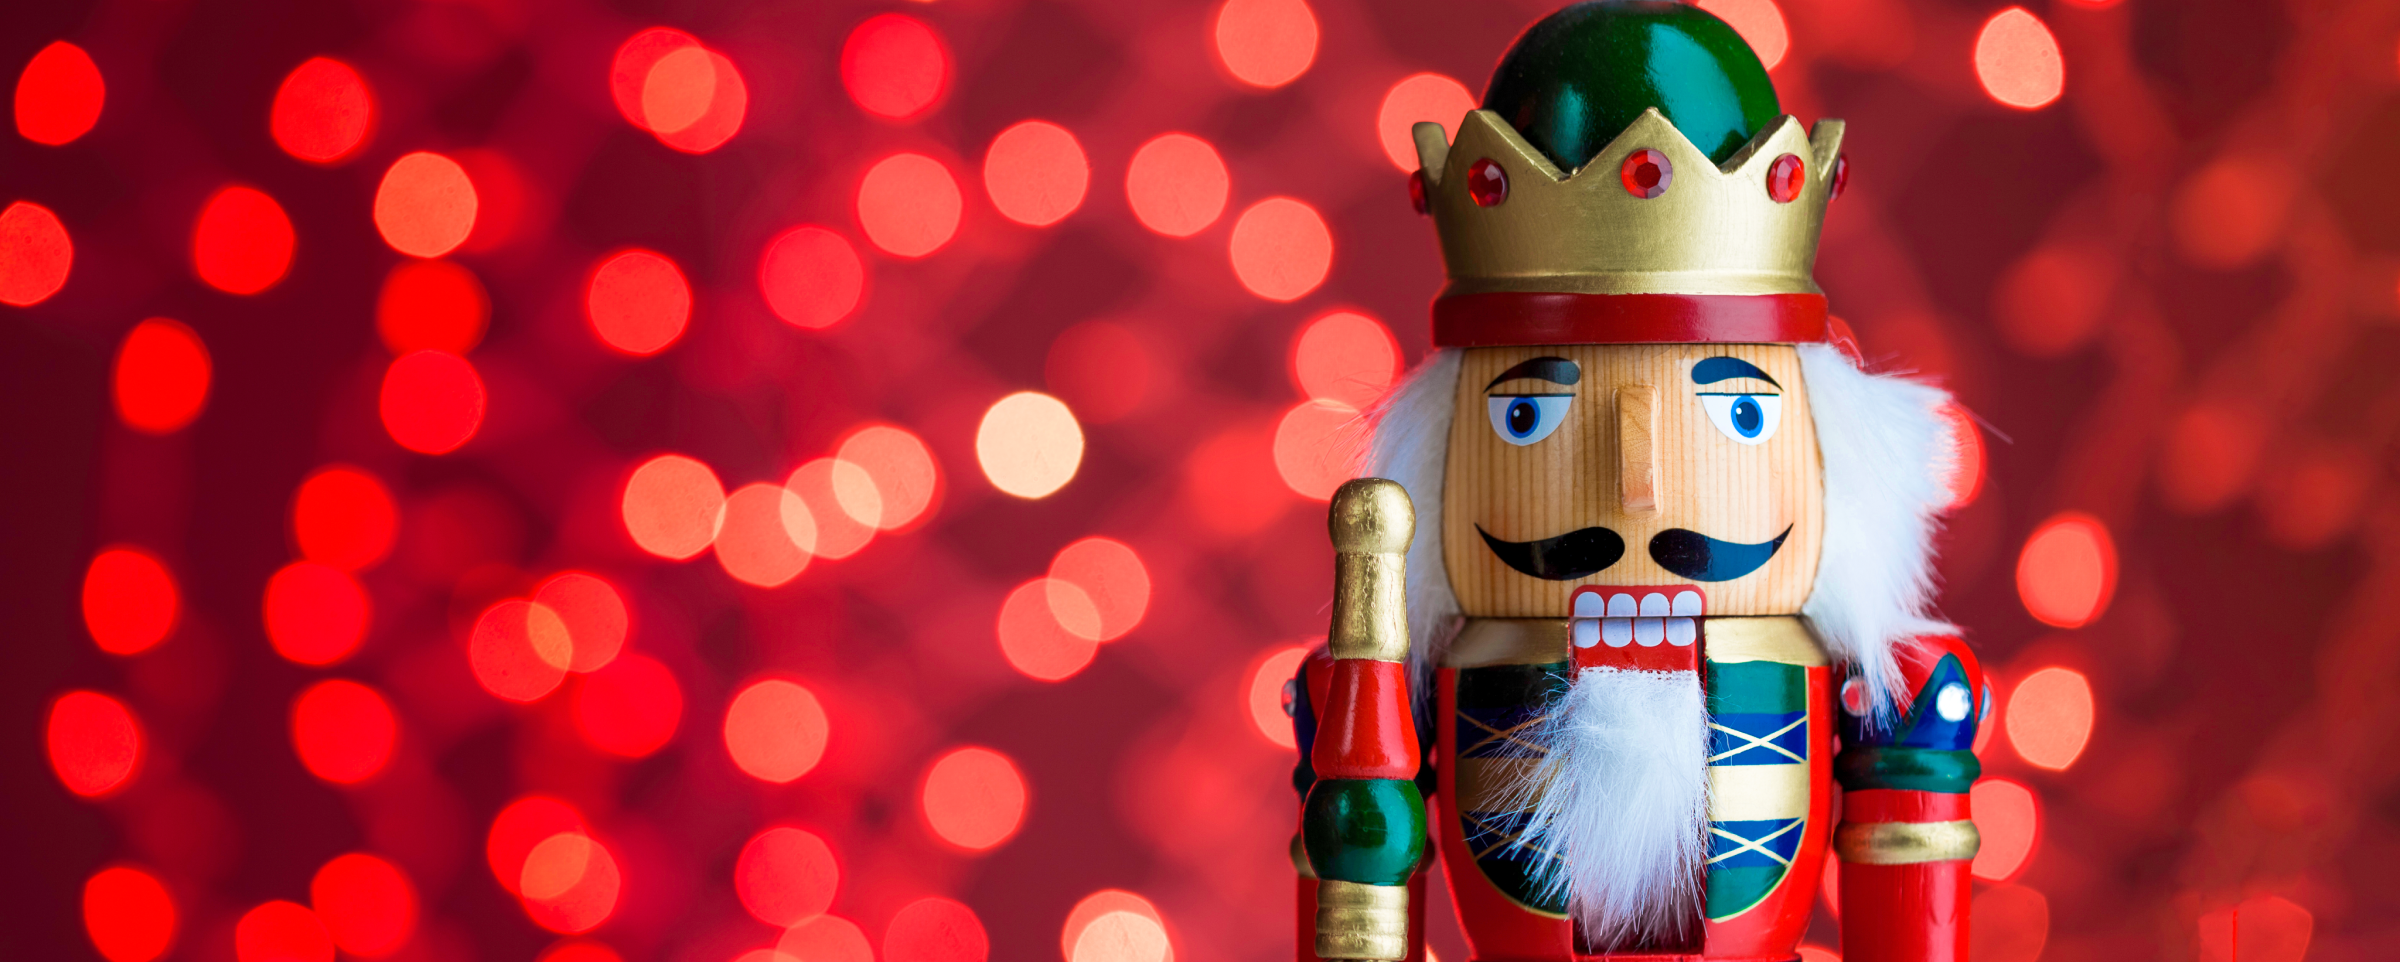 How the Nutcracker Became a Christmas Classic | flowkey